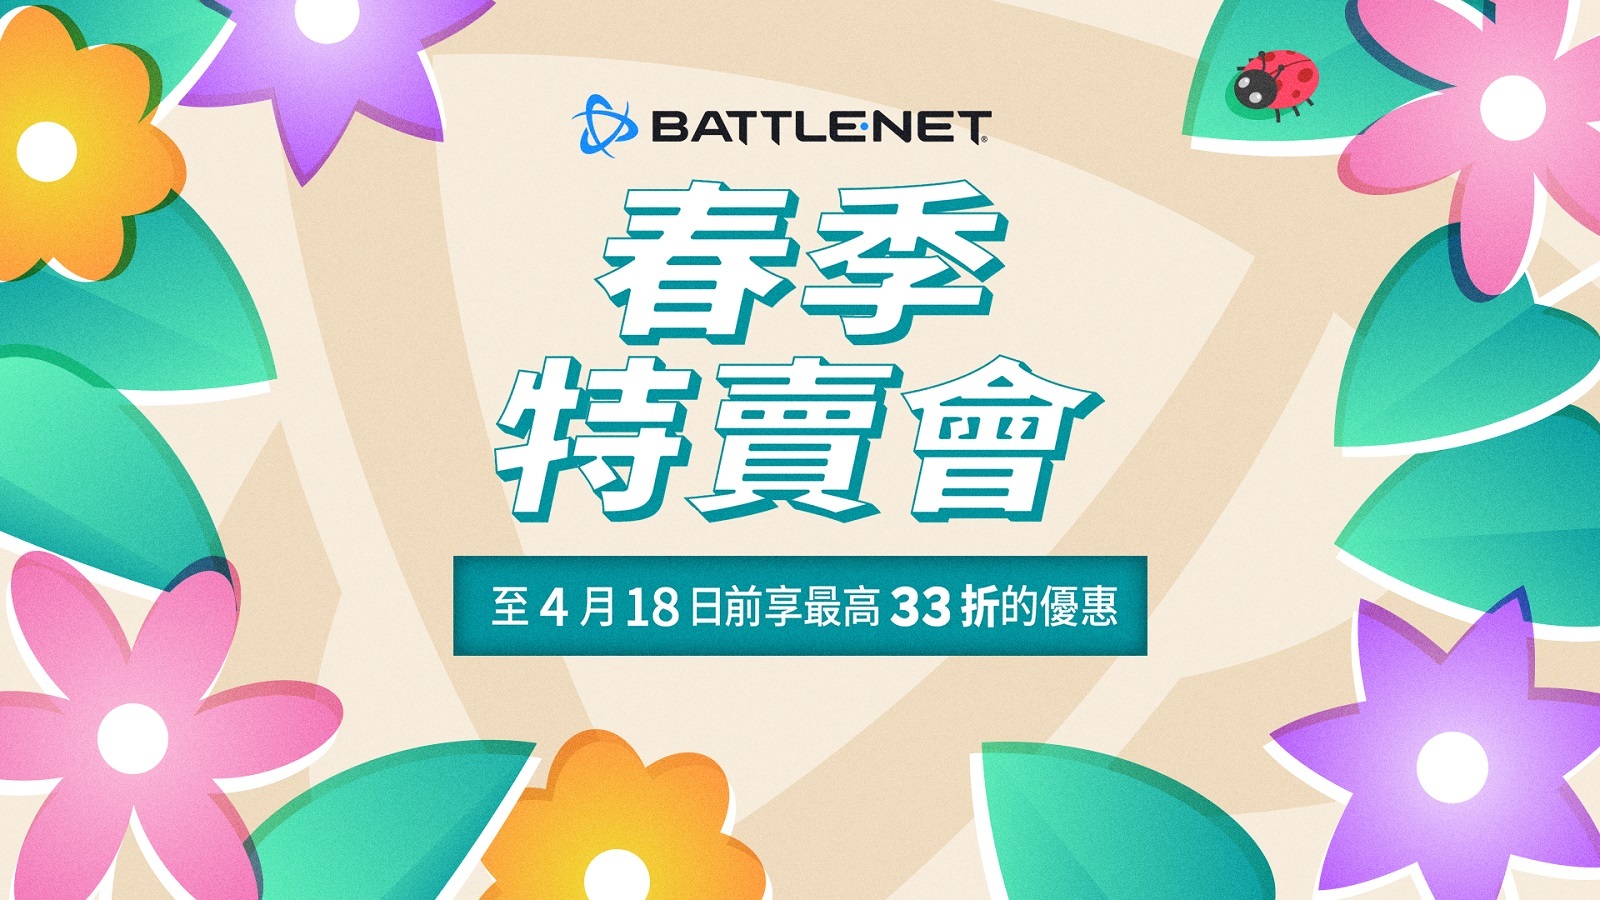 Battle.net 春季特賣會登場 《鬭陣特攻 2》組郃包、《魔獸世界》等釋出限時優惠